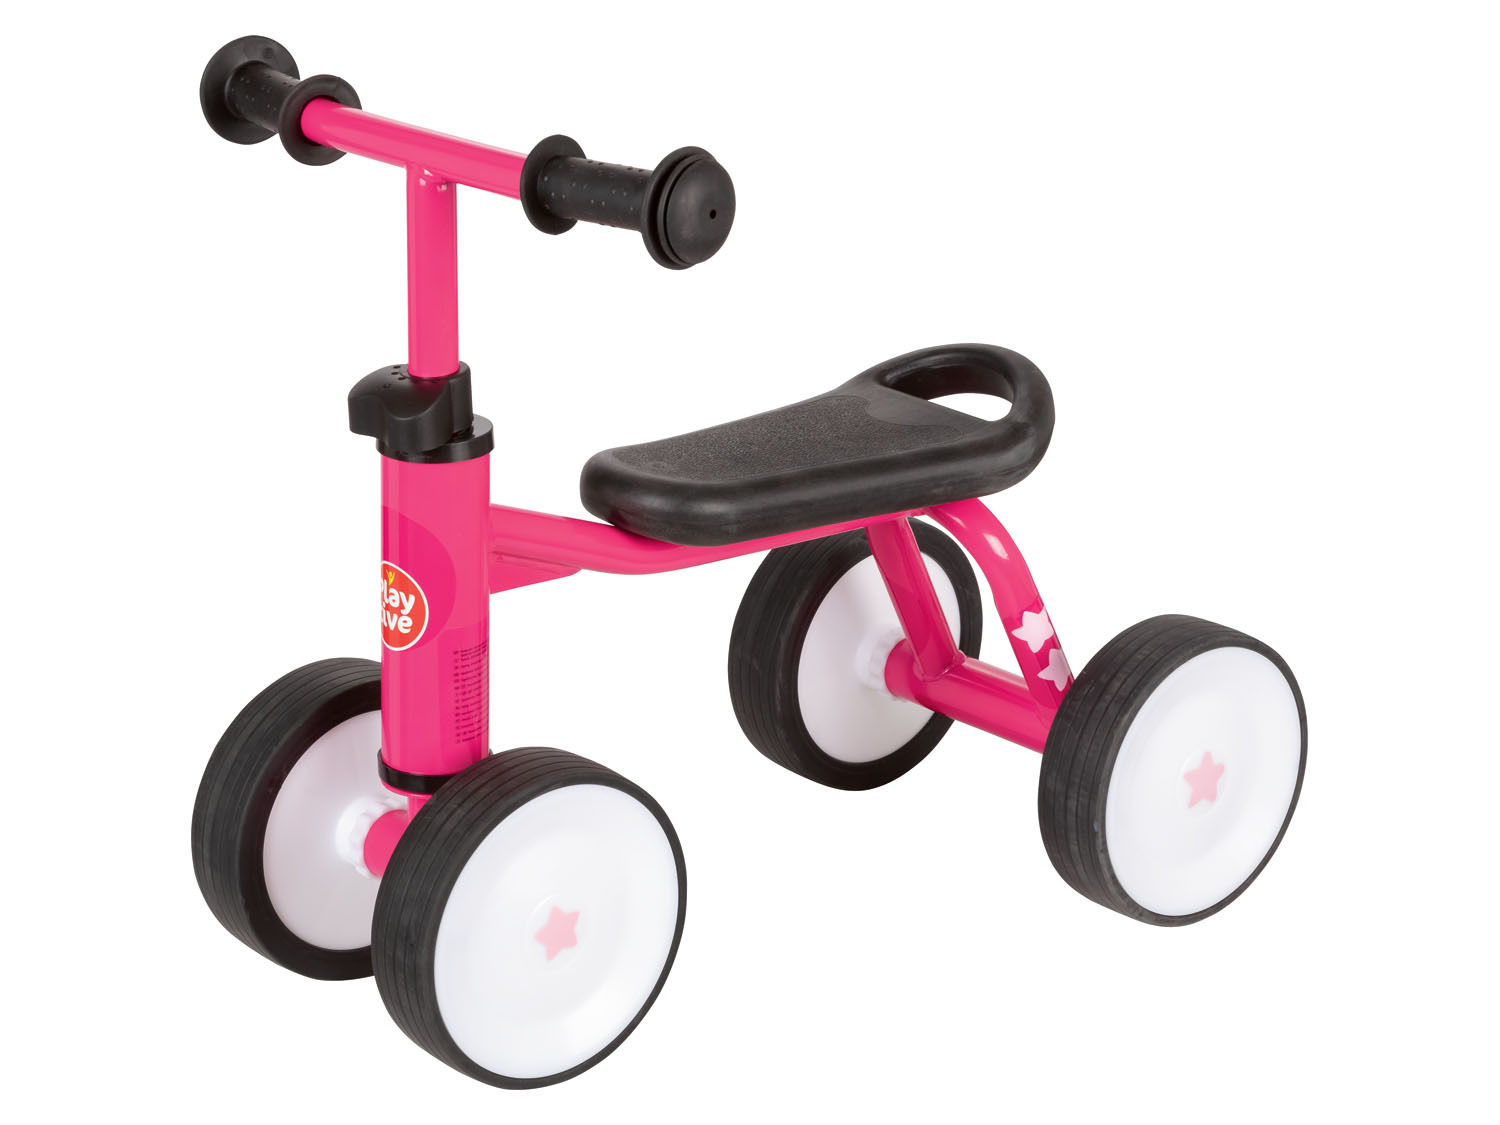 Playtive Kleinkinder Lauflernrad mit ergonomischem Sitz